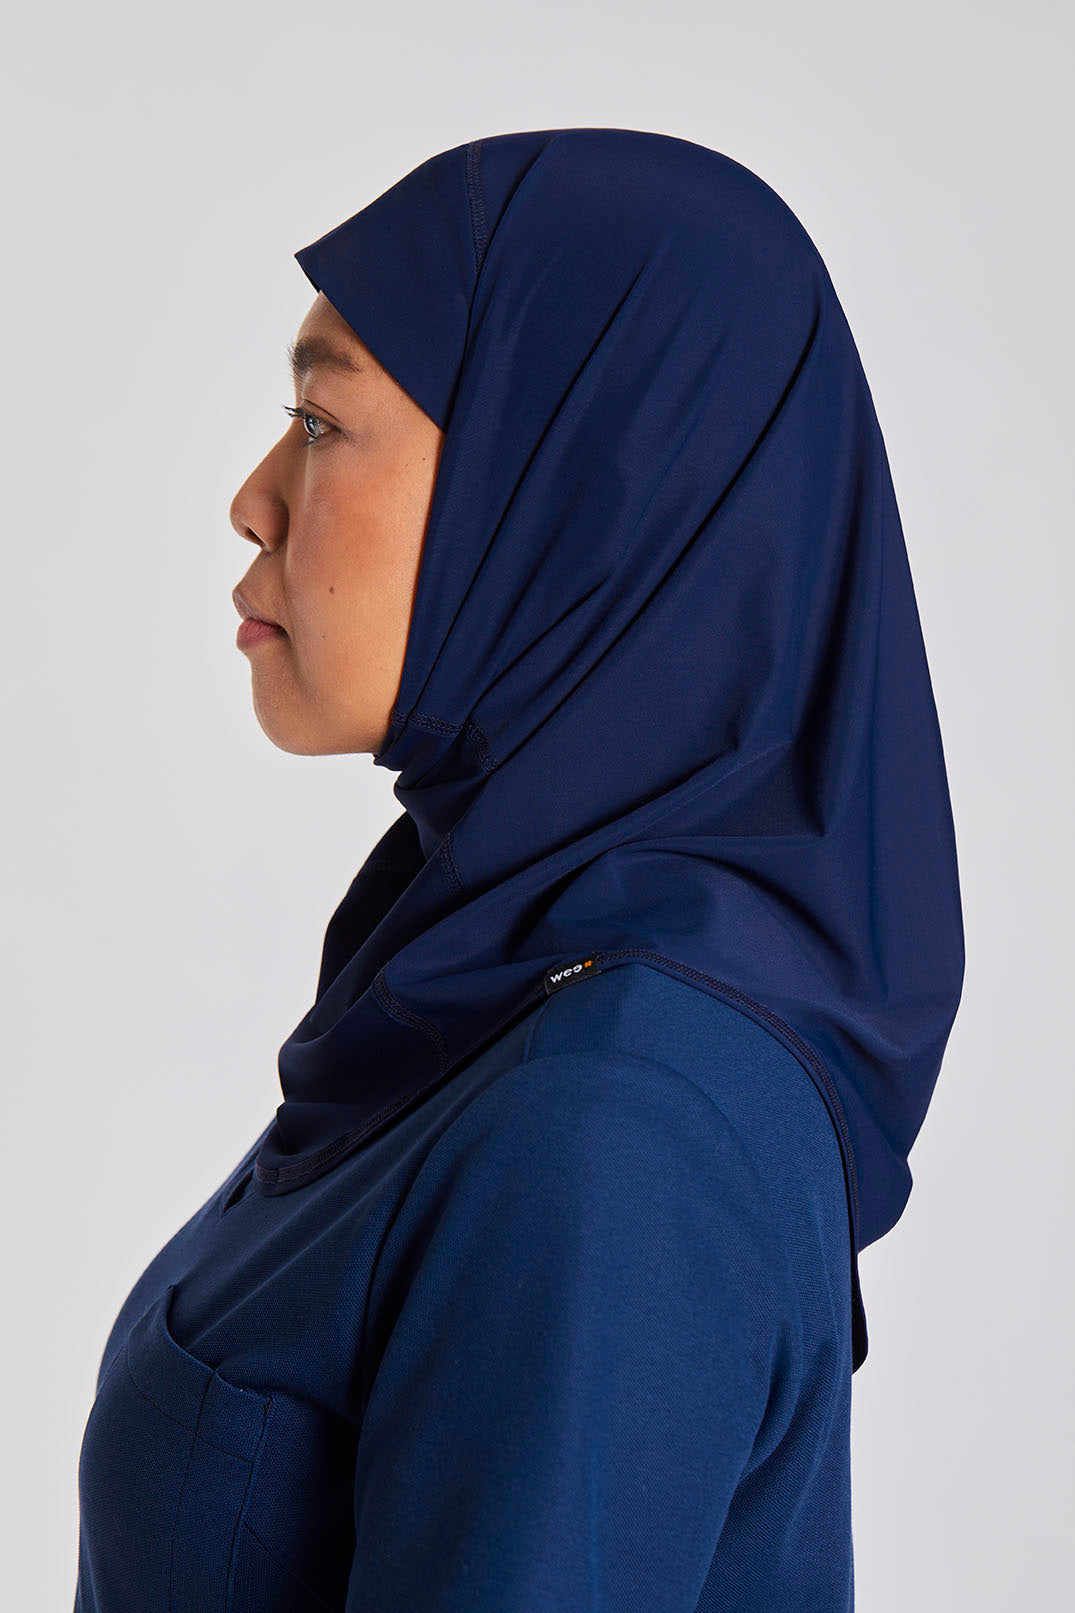 Set 3x Hijab